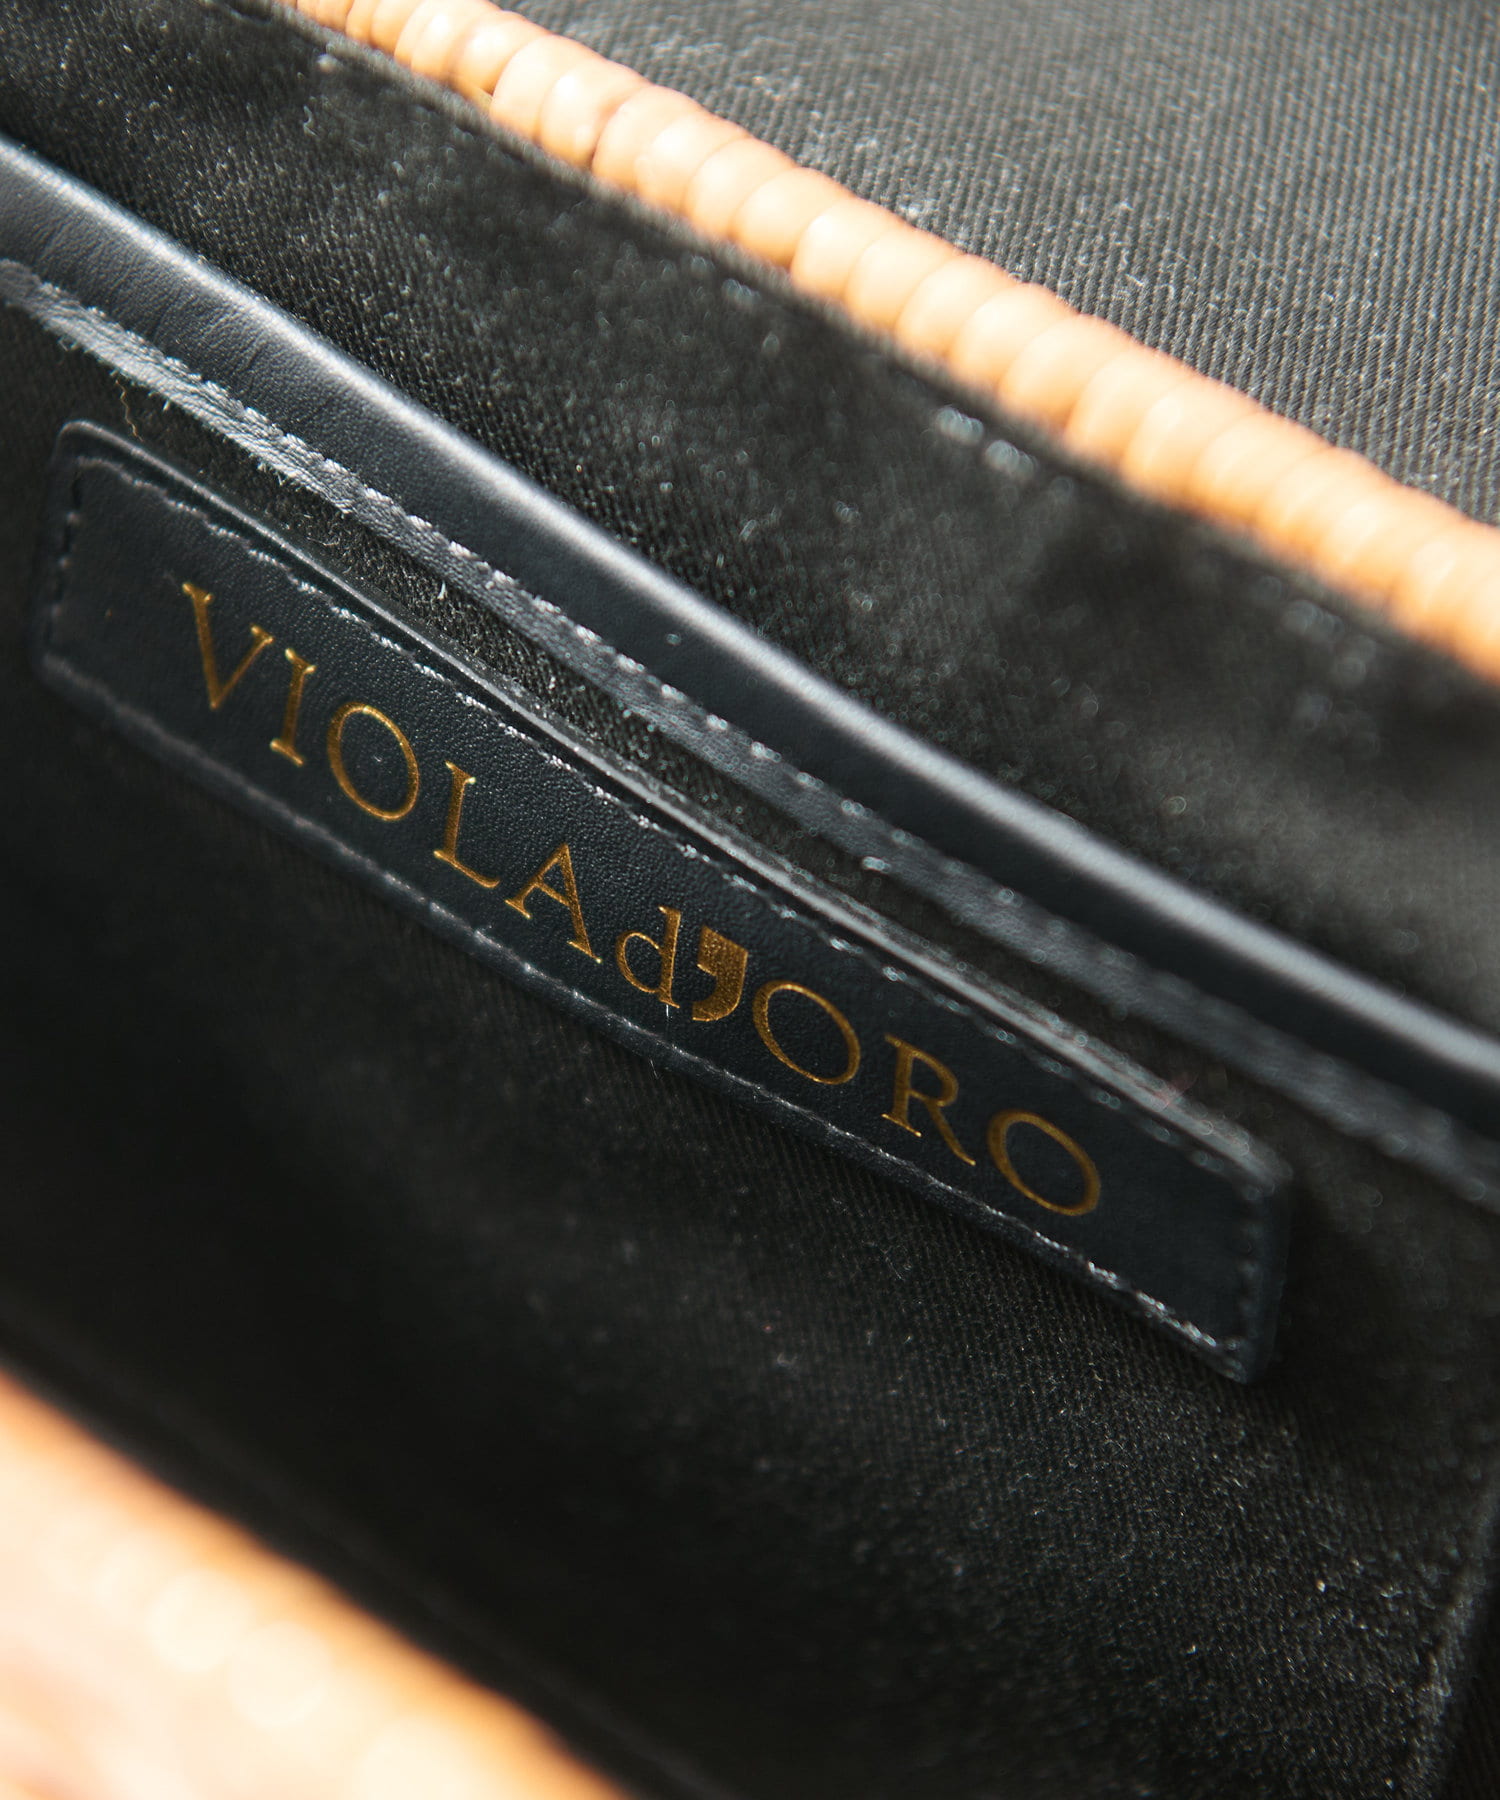 La boutique BonBon(ラブティックボンボン) ヴィオラドーロ/スプリットラタントップハンドルストラップ付きバッグ